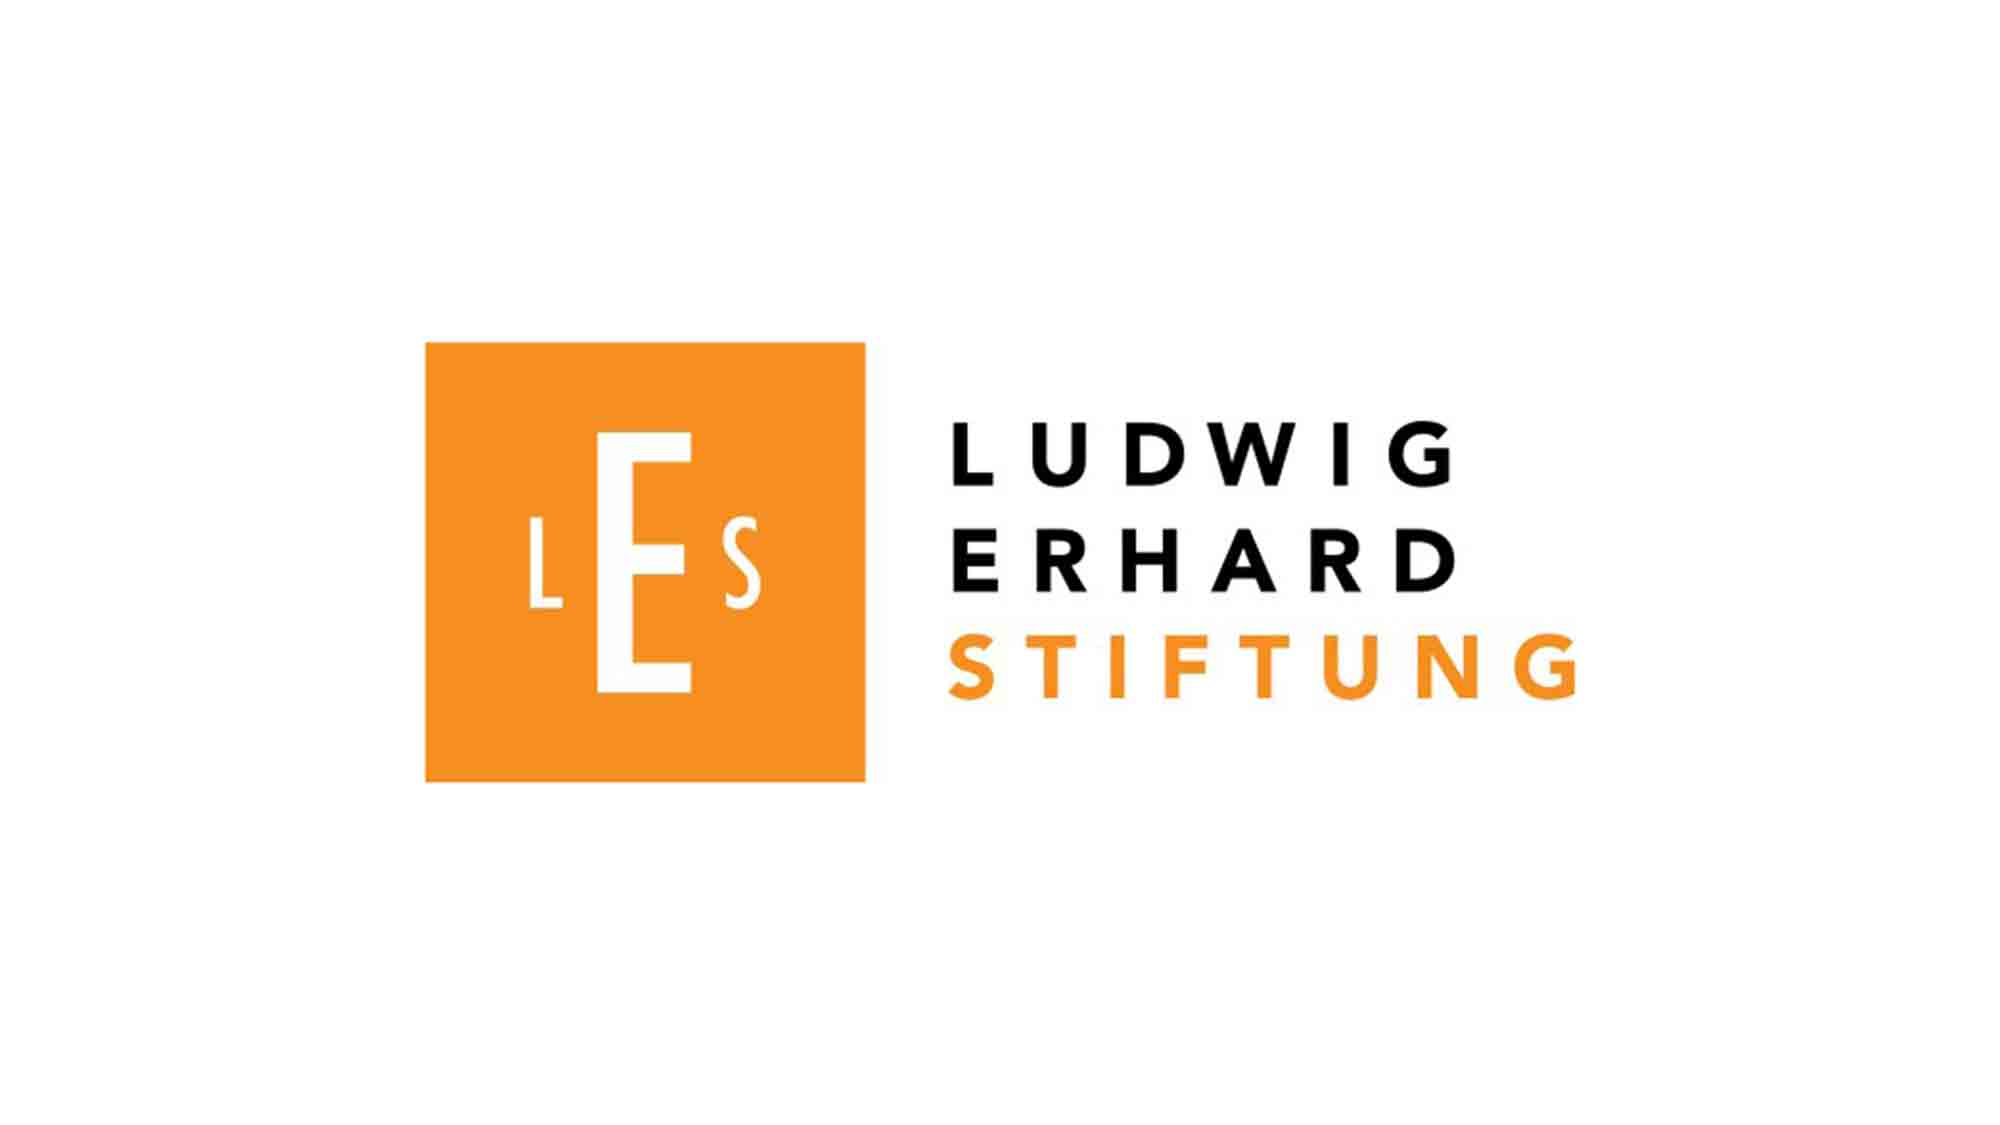 Ludwig Erhard Stiftung, 60 Jahre wirtschaftspolitische Expertise